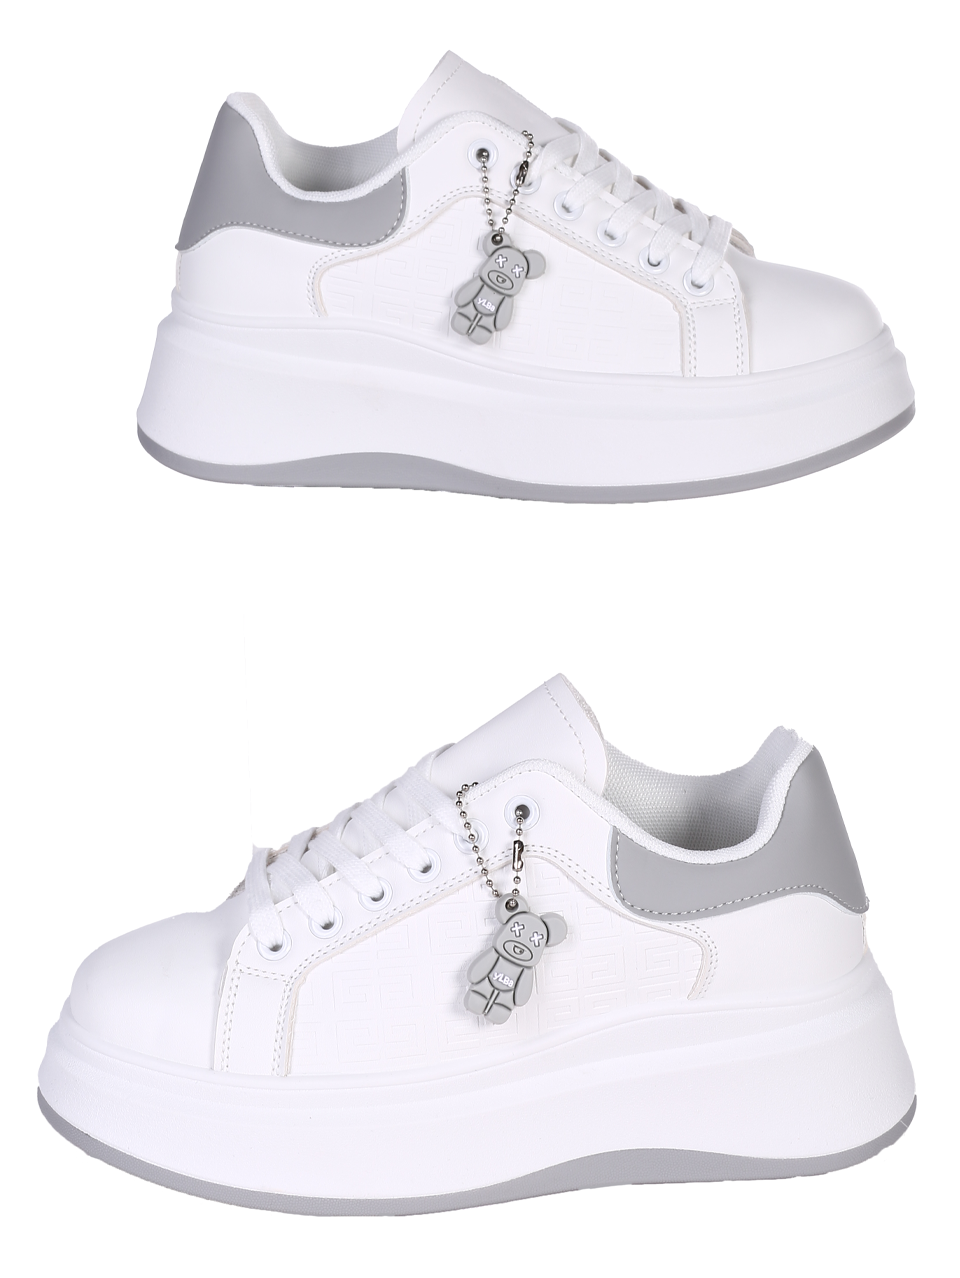 Ежедневни дамски обувки на платформа в бял/сив цвят 3U-24071 white/grey